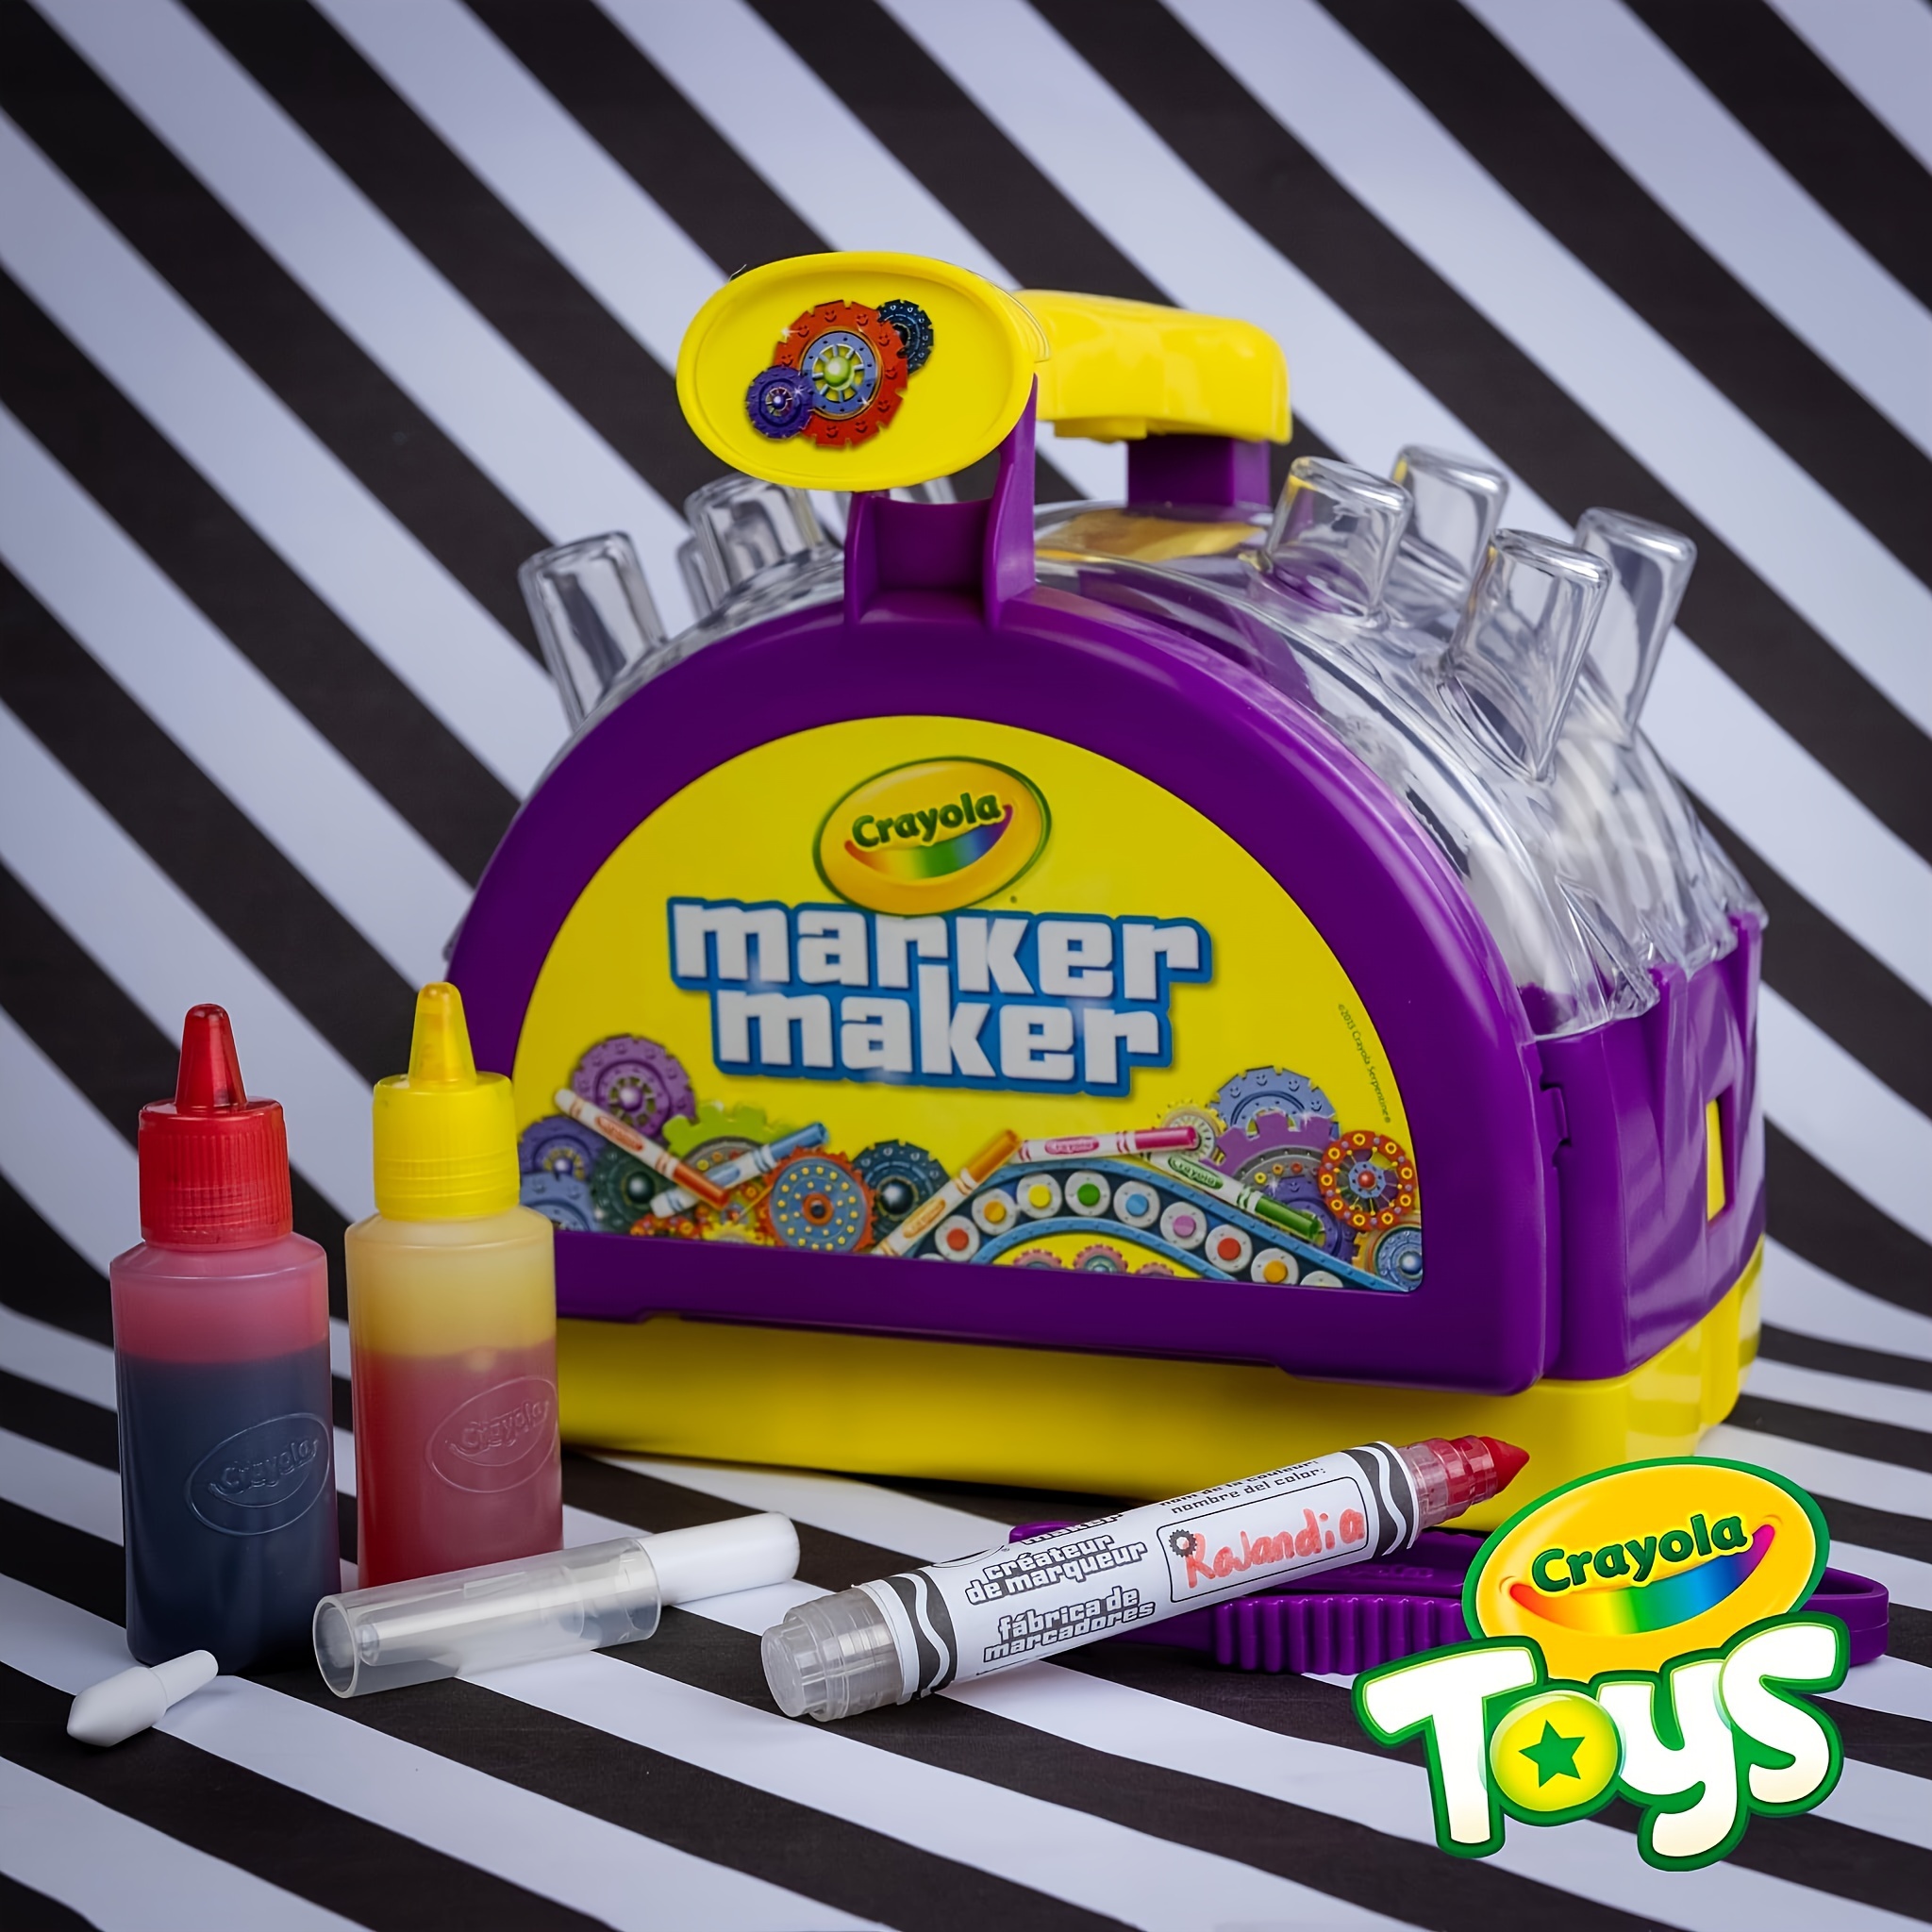 Marker Maker Kit For Marker Creation - Temu